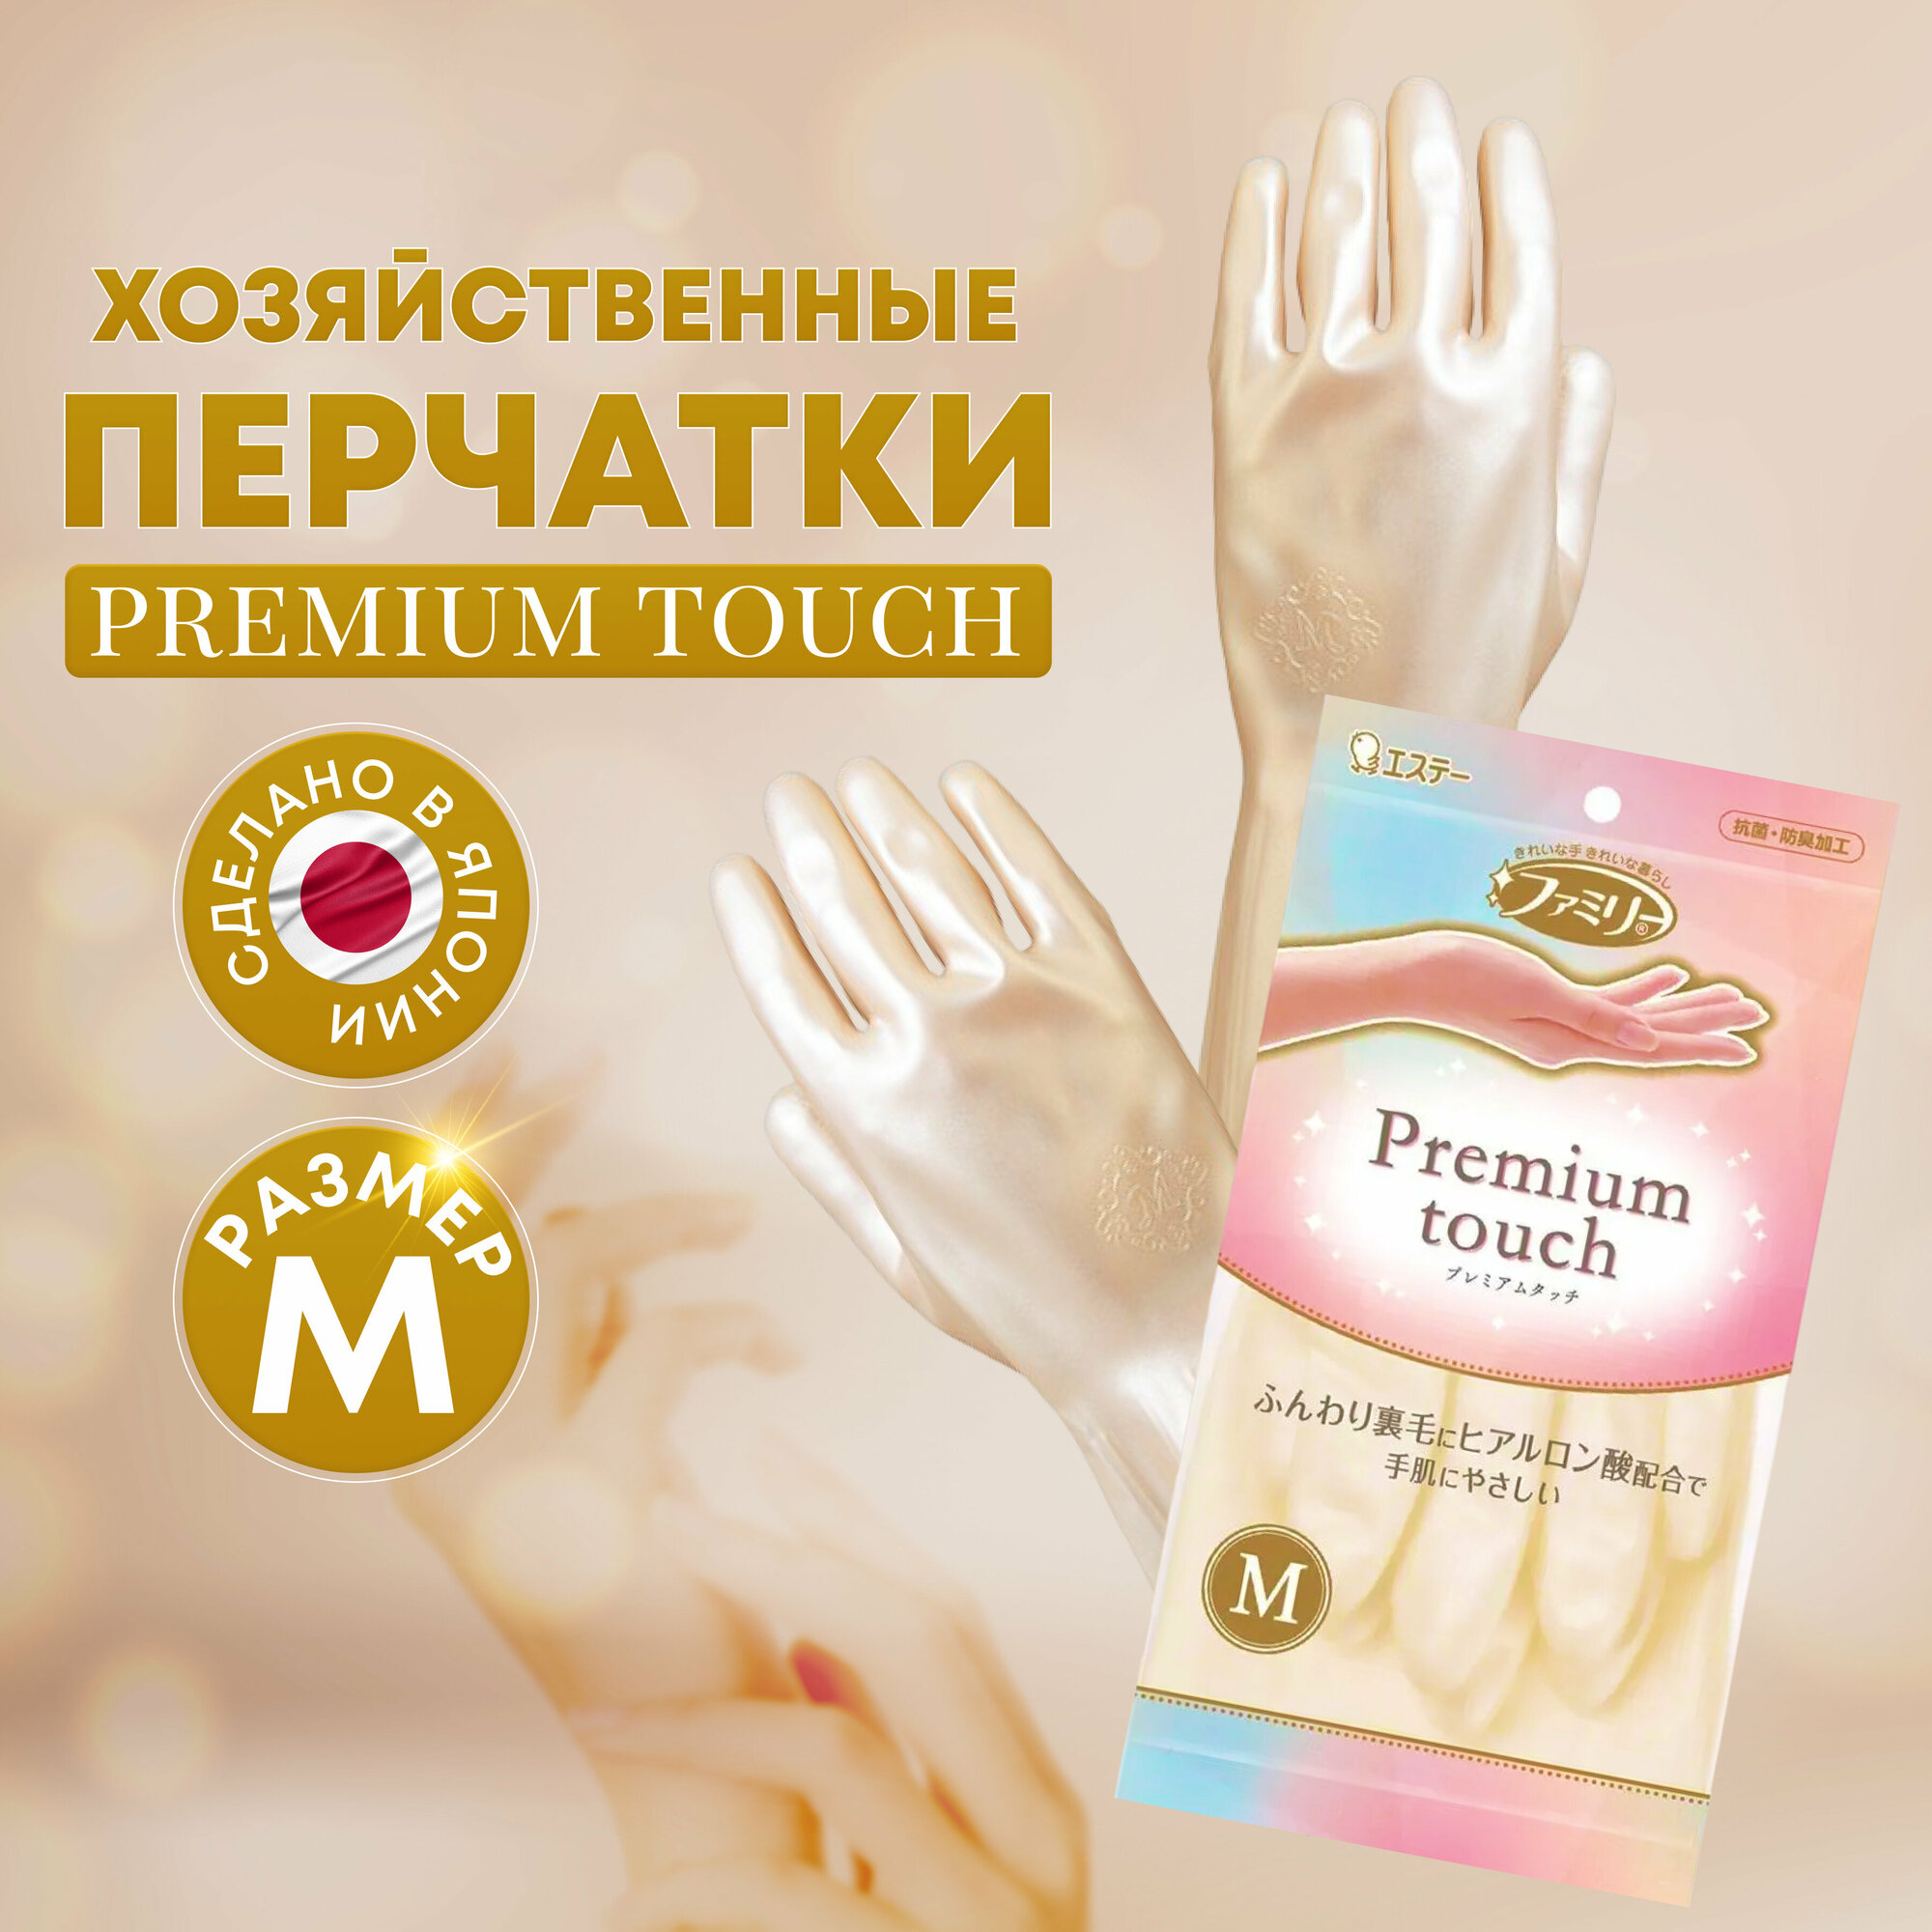 ST Перчатки для бытовых и хозяйственных нужд "Family" "Premium touch" (винил, пропитаны гиалуроновой кислотой, средней толщины) размер M